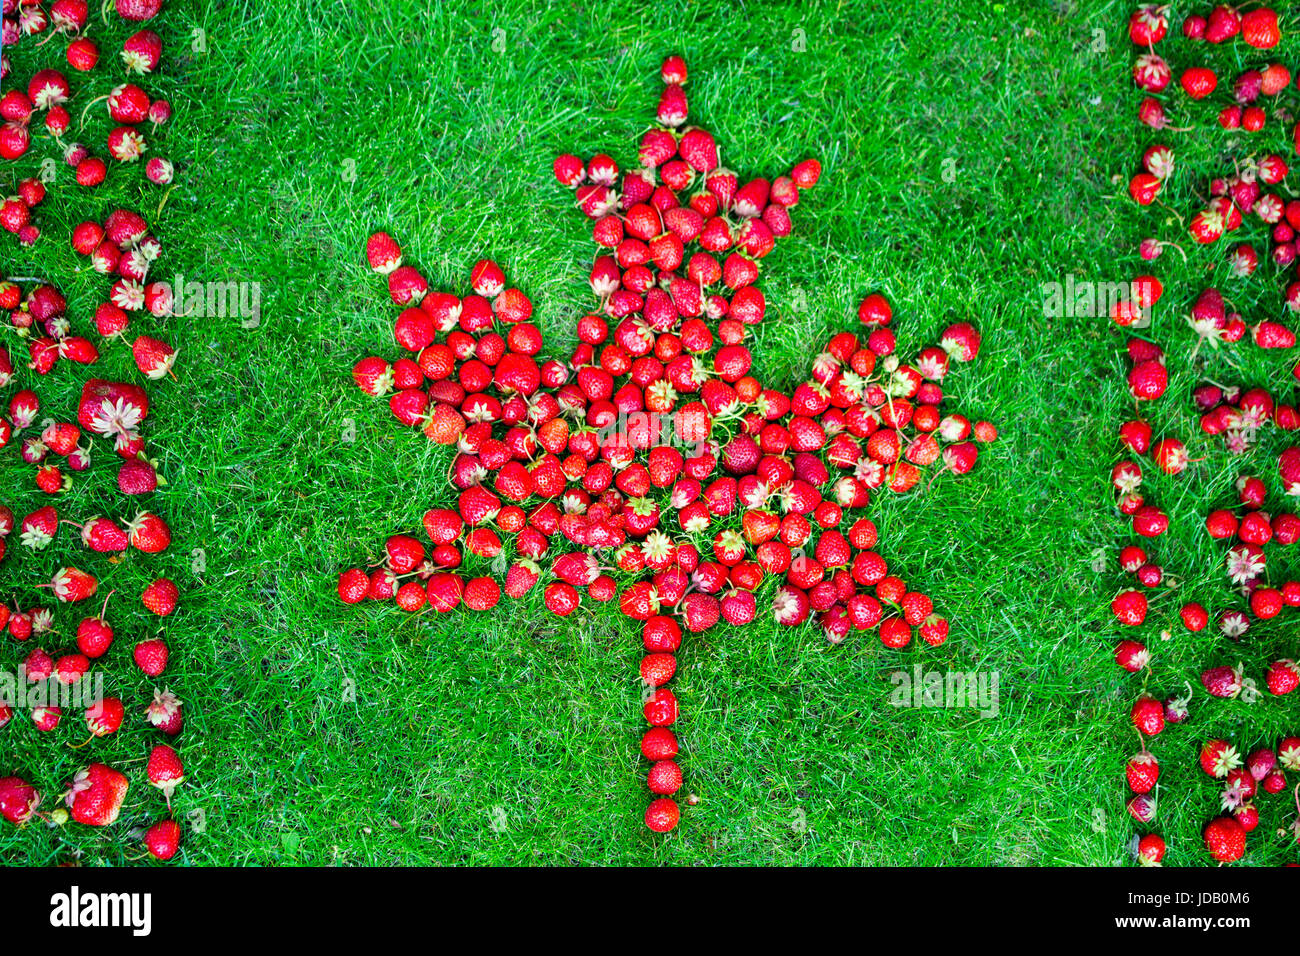 Kanadische Flagge mit maple leaf aus Erdbeeren auf einem grünen Rasen Kanada Tag zu feiern. Stockfoto